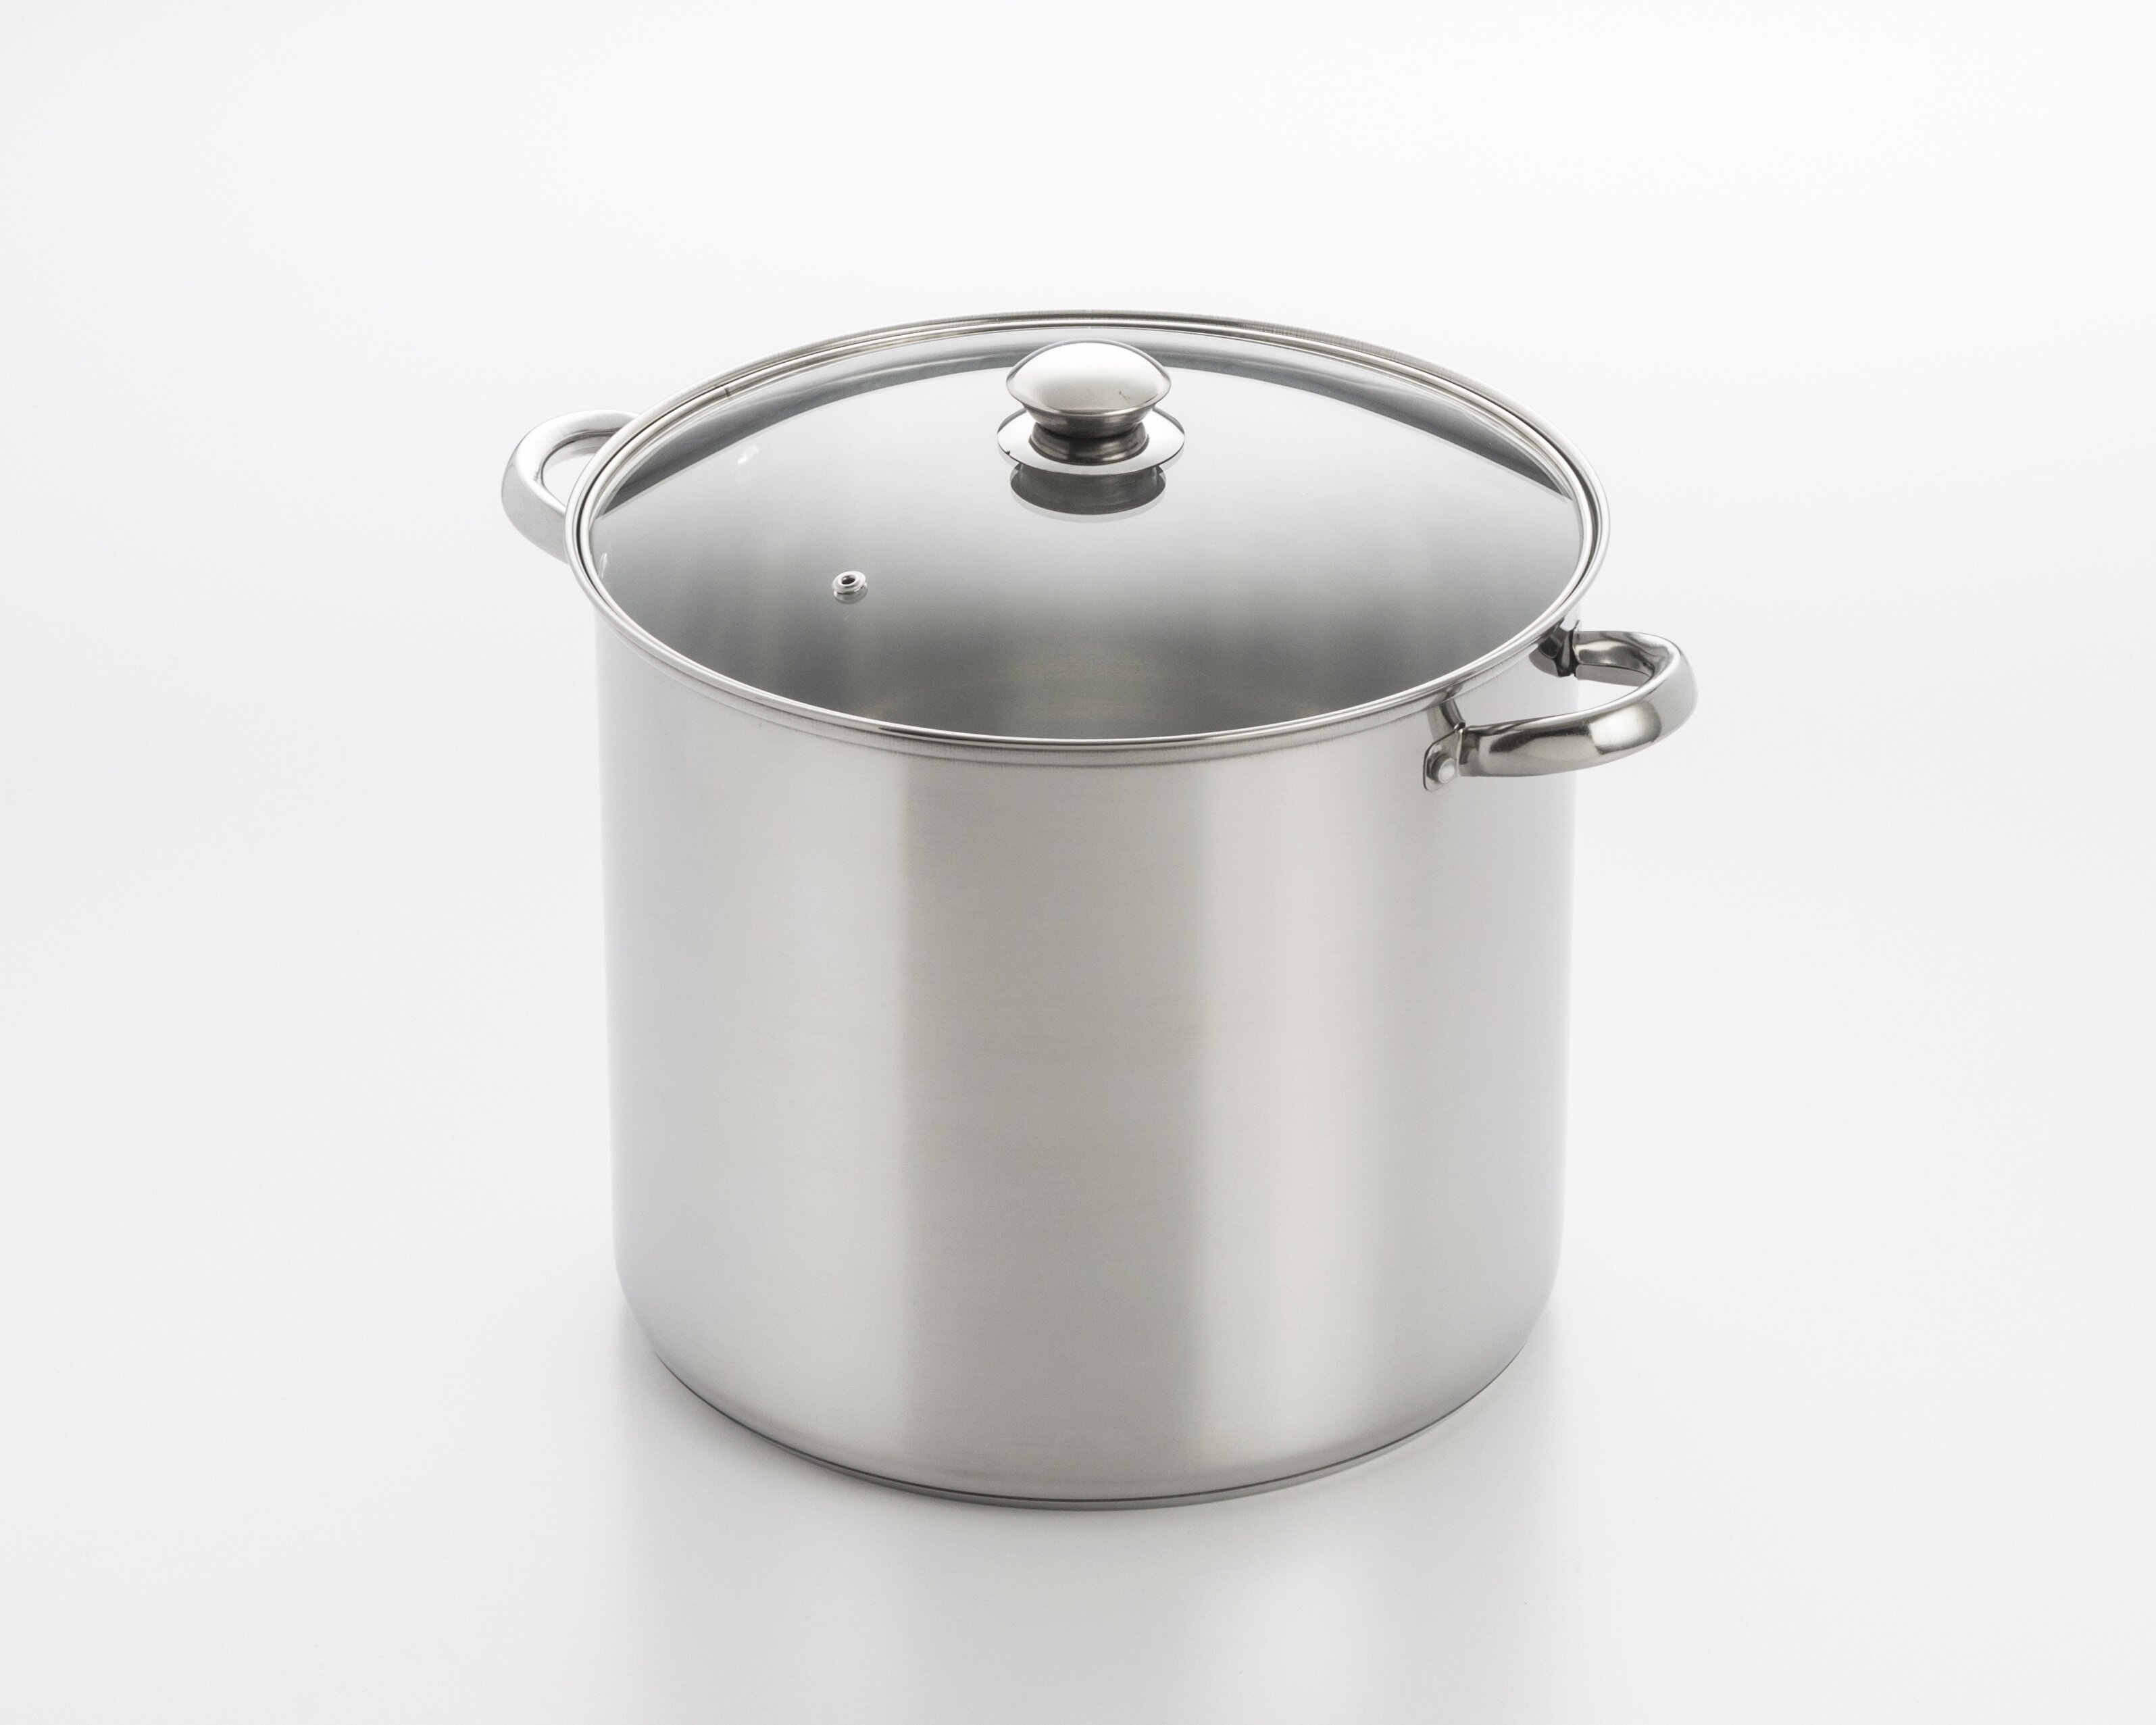 https://assets.wfcdn.com/im/32436931/compr-r85/5381/53817102/cook-pro-stainless-steel-stock-pot.jpg